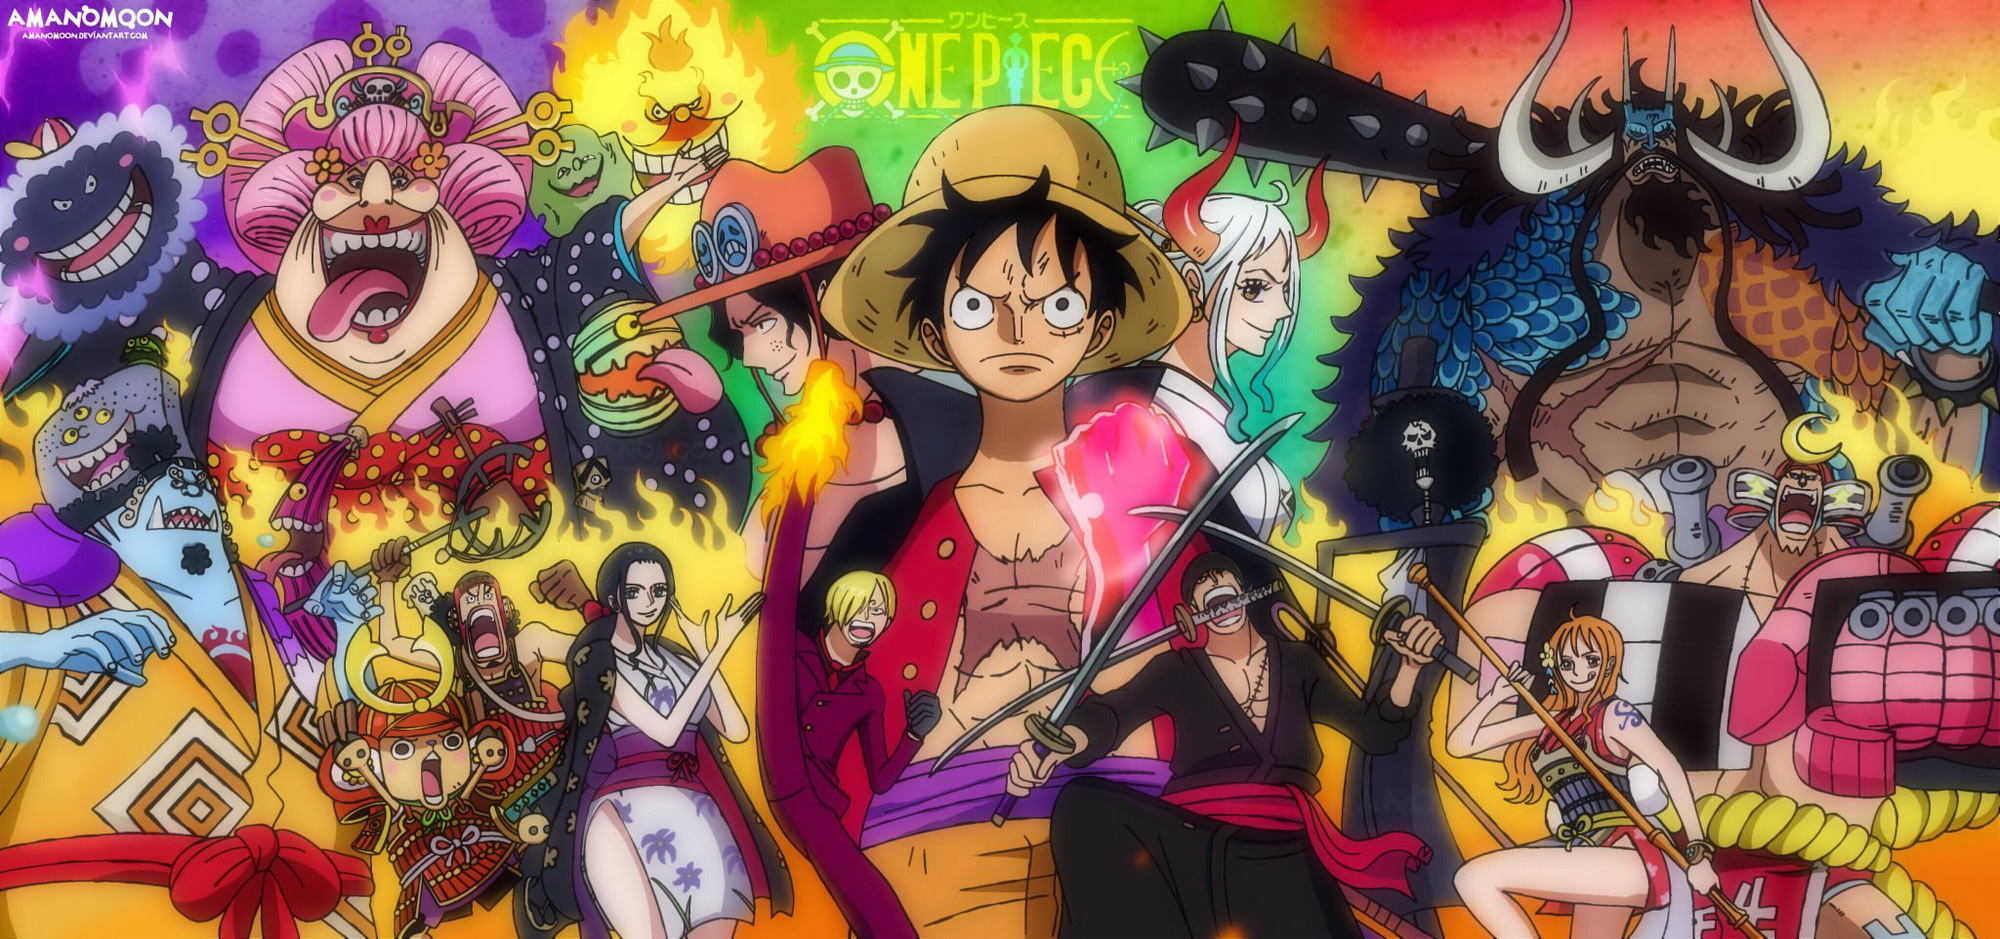 Trang bìa One Piece tập 100 - một trong những kỷ lục đáng nhớ của anime này. Chuẩn bị cho cuộc phiêu lưu kinh hoàng nhất, cùng với những người hùng đầy can đảm và tình bạn chân thành. Cùng nhau xông pha vào cuộc chiến của đội hải tặc Mũ Rơm, vượt qua mọi thử thách và góp phần xây dựng một thế giới mới!